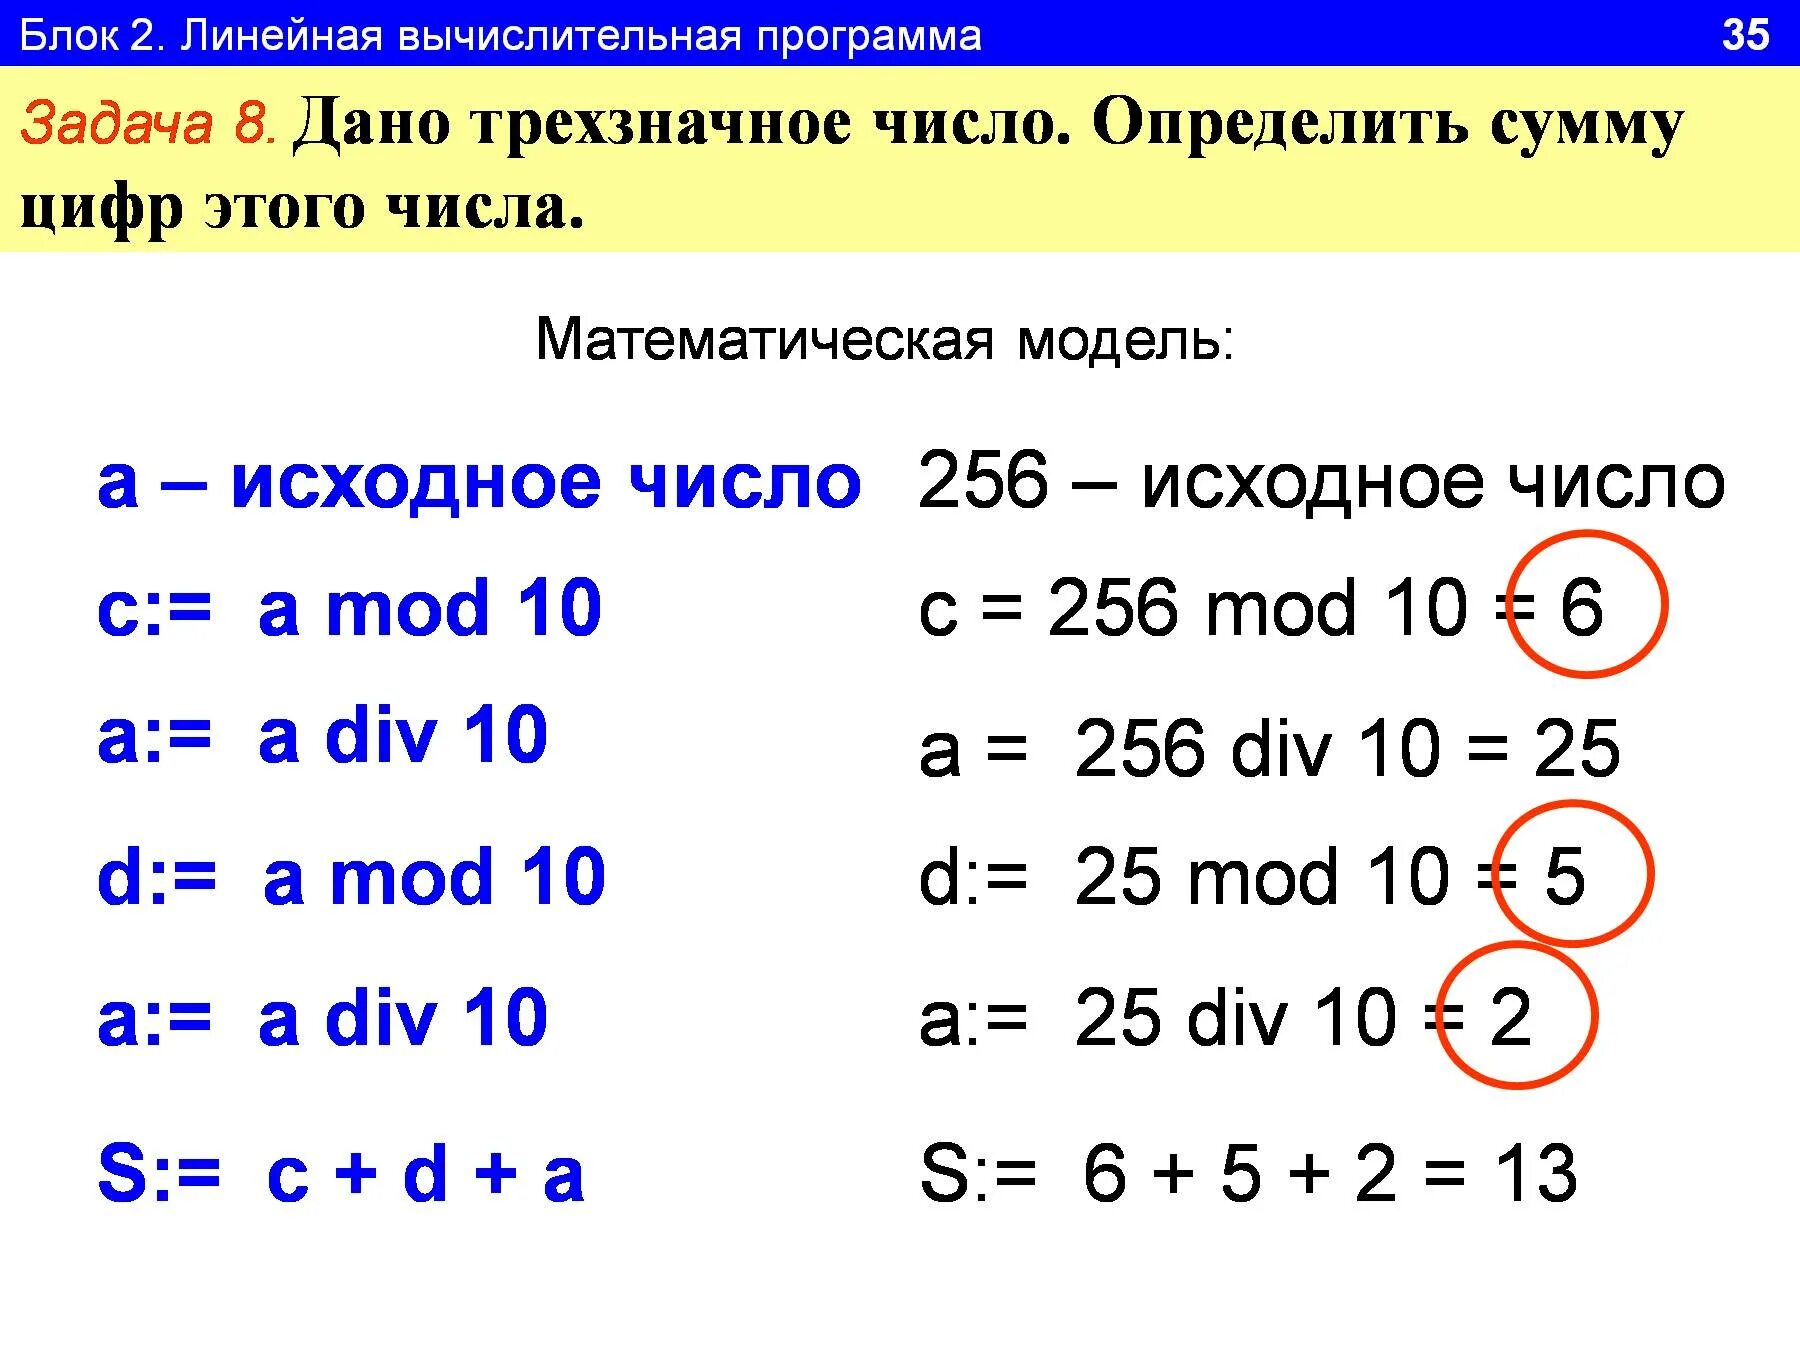 Программа на Паскале сумма цифр трехзначного числа. Сумма цифр трехзначного числа Pascal. Сумма цифр Информатика. Программа найти сумму цифр трехзначного числа.